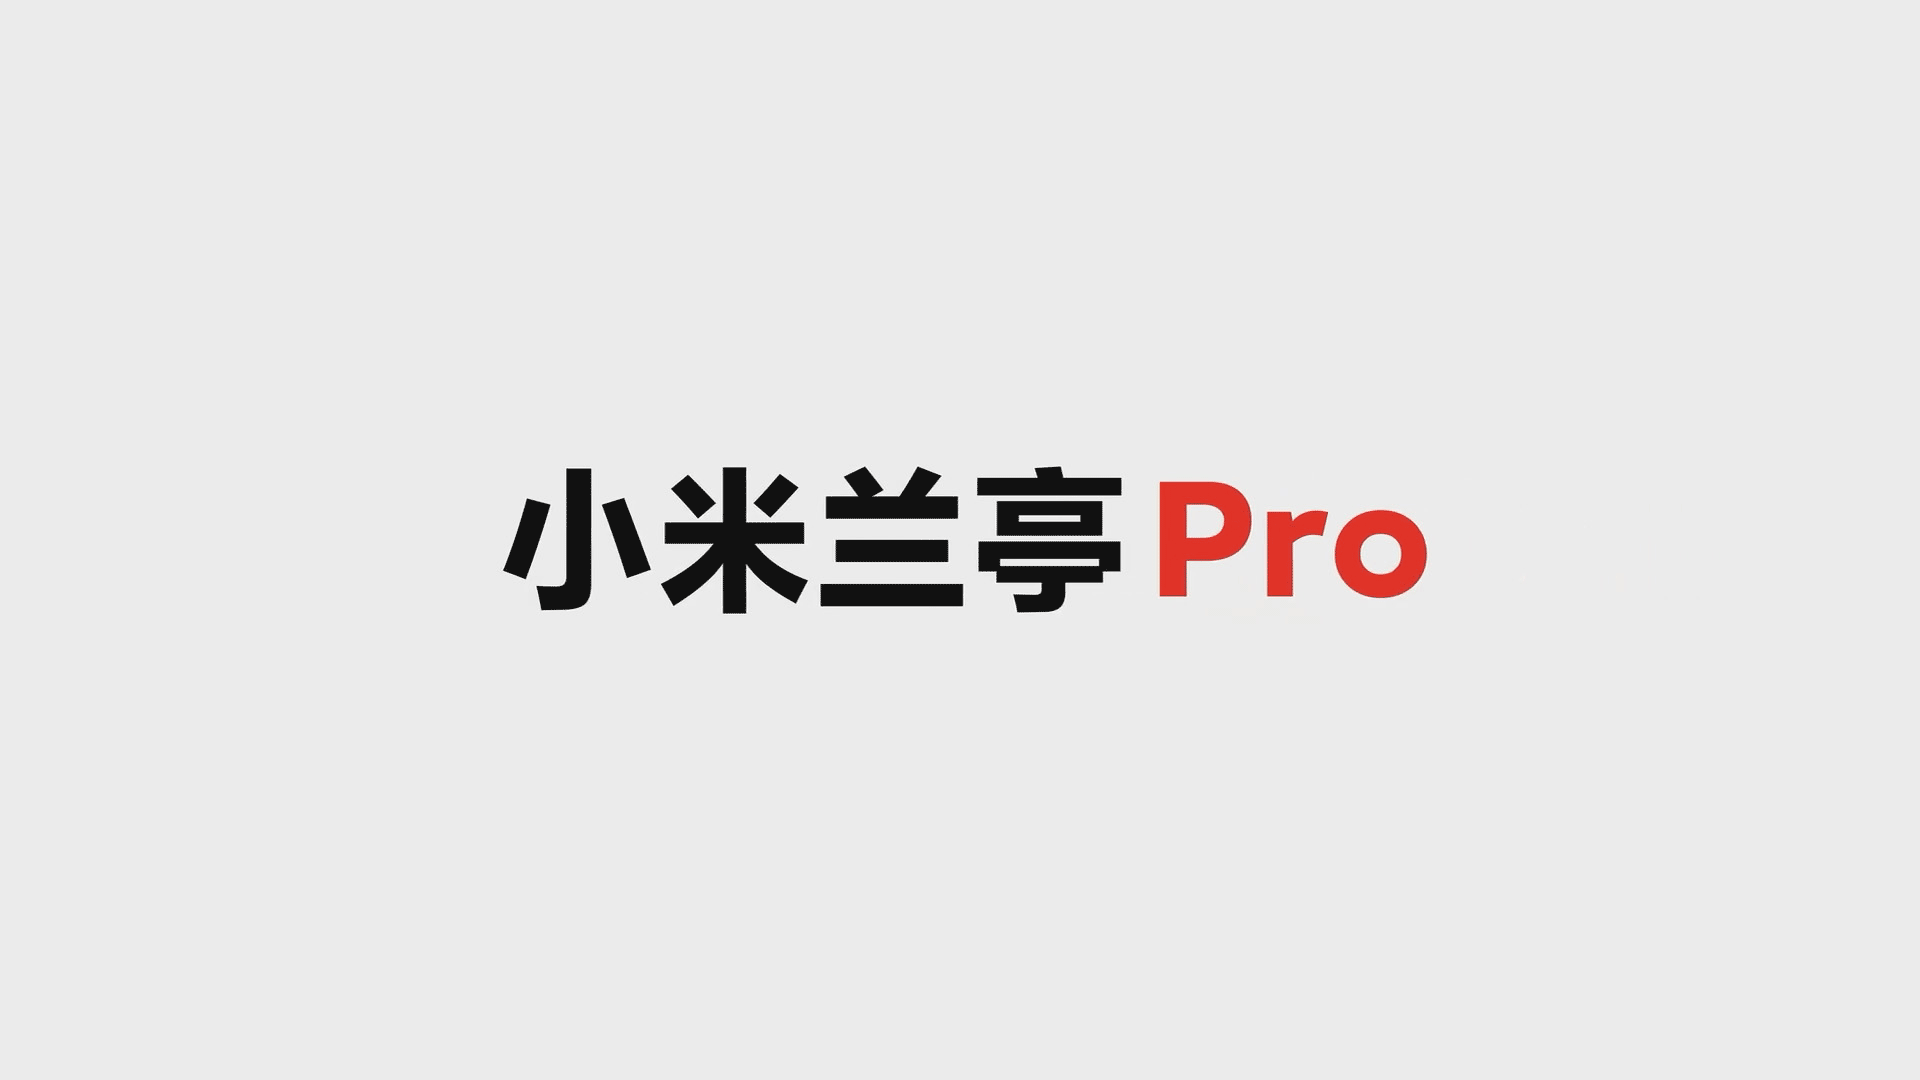 [临摹]小米动态字体-兰亭Pro宣传片